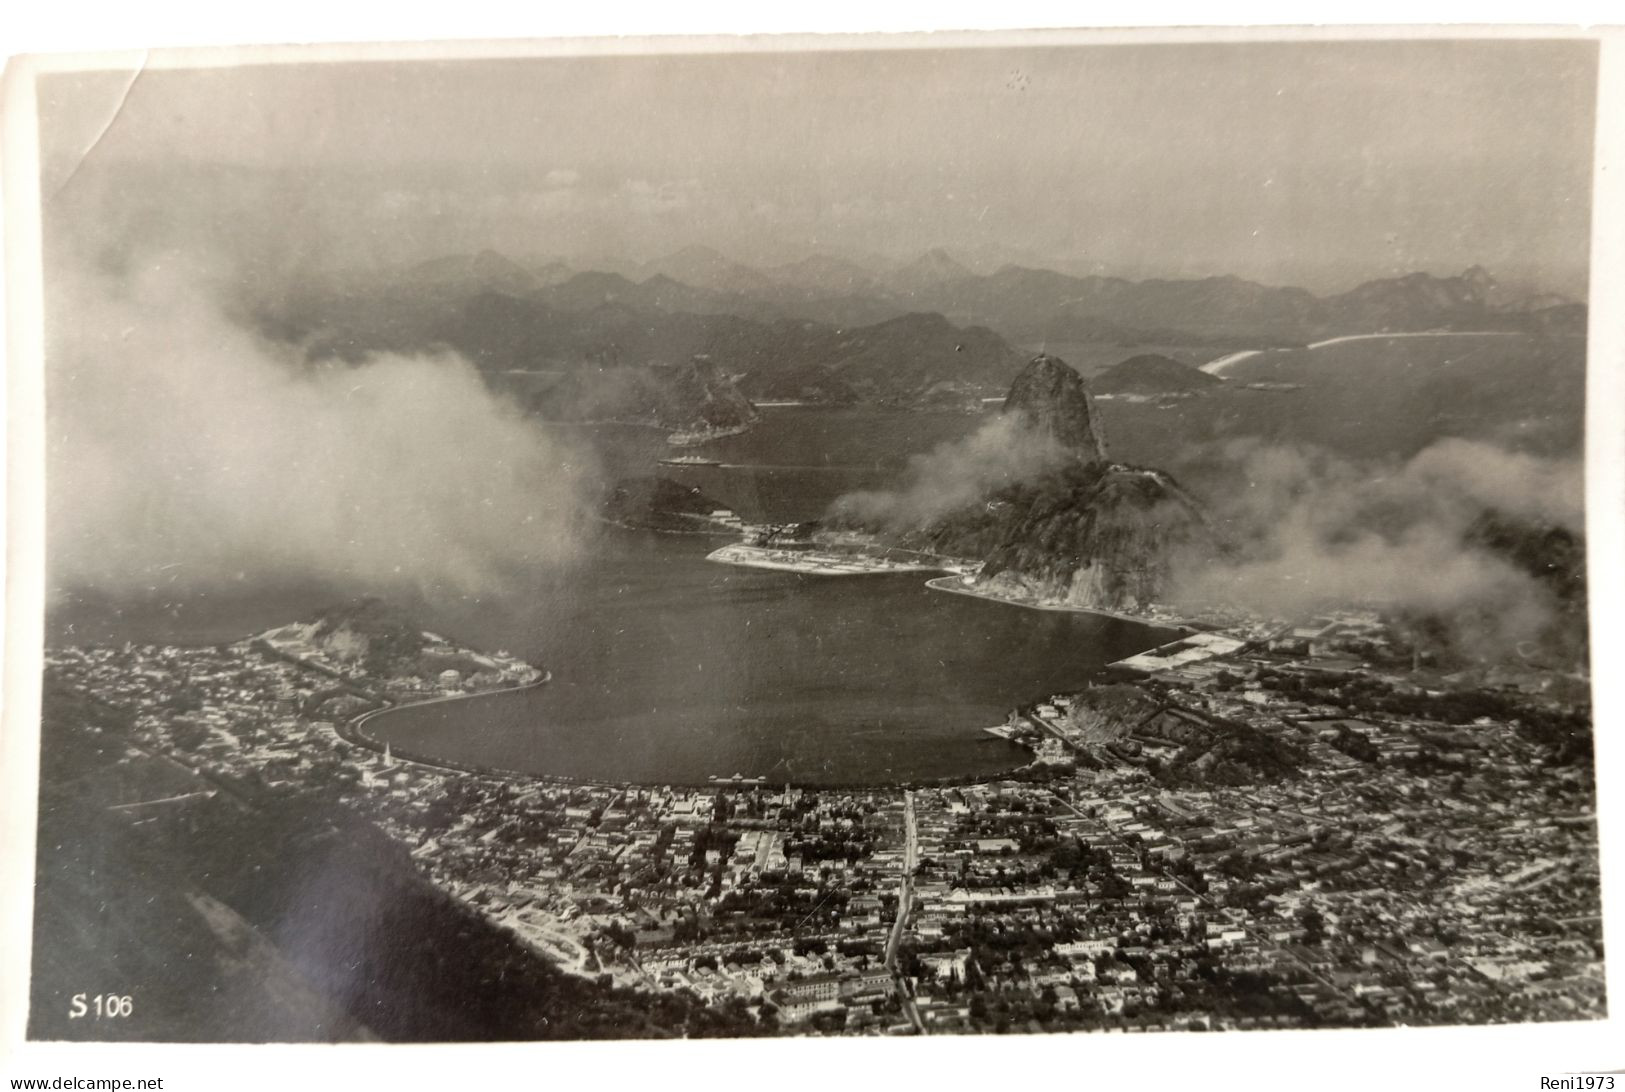 Rio De Janeiro, Ausblick Vom Corcovado, 1938 - Rio De Janeiro